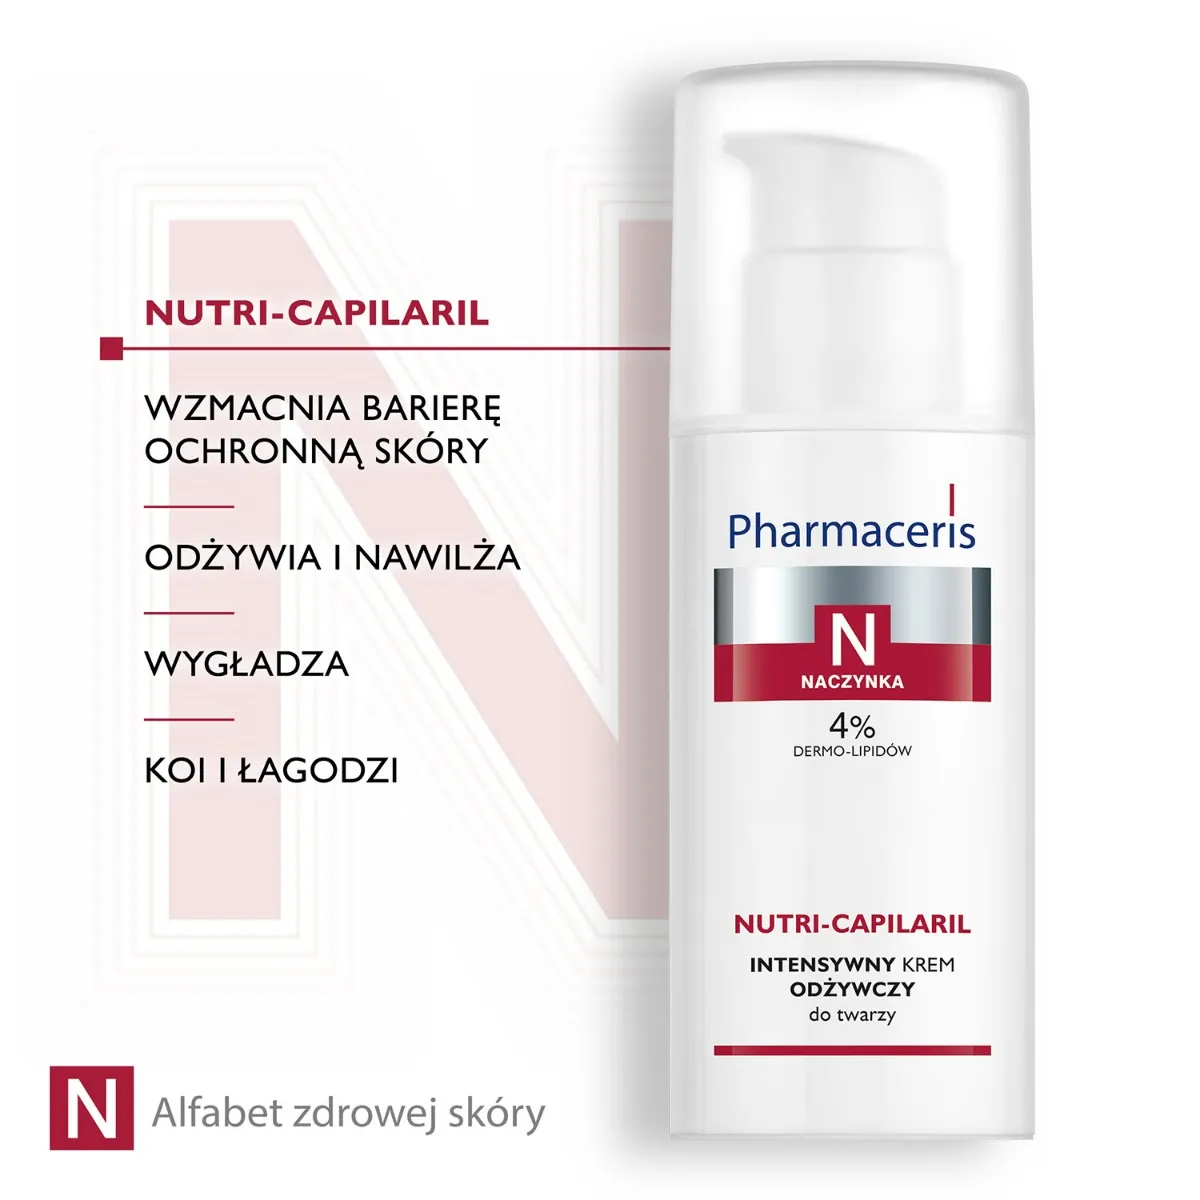 Pharmaceris N Nutri-Capilaril, intensywny krem odżywczy do twarzy, 50 ml 